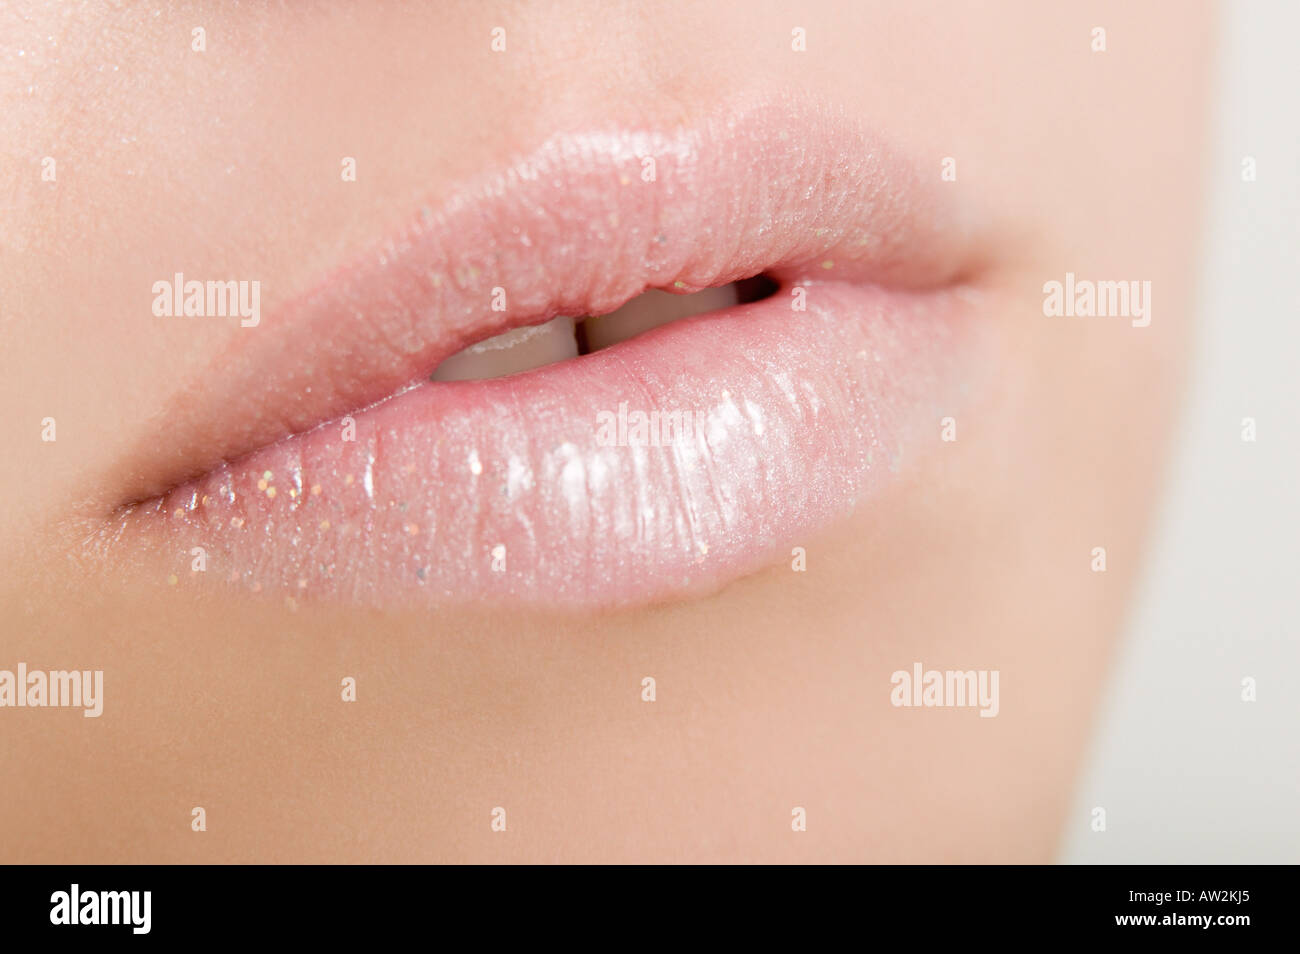 Woman wearing pink lipstick Stock Photo